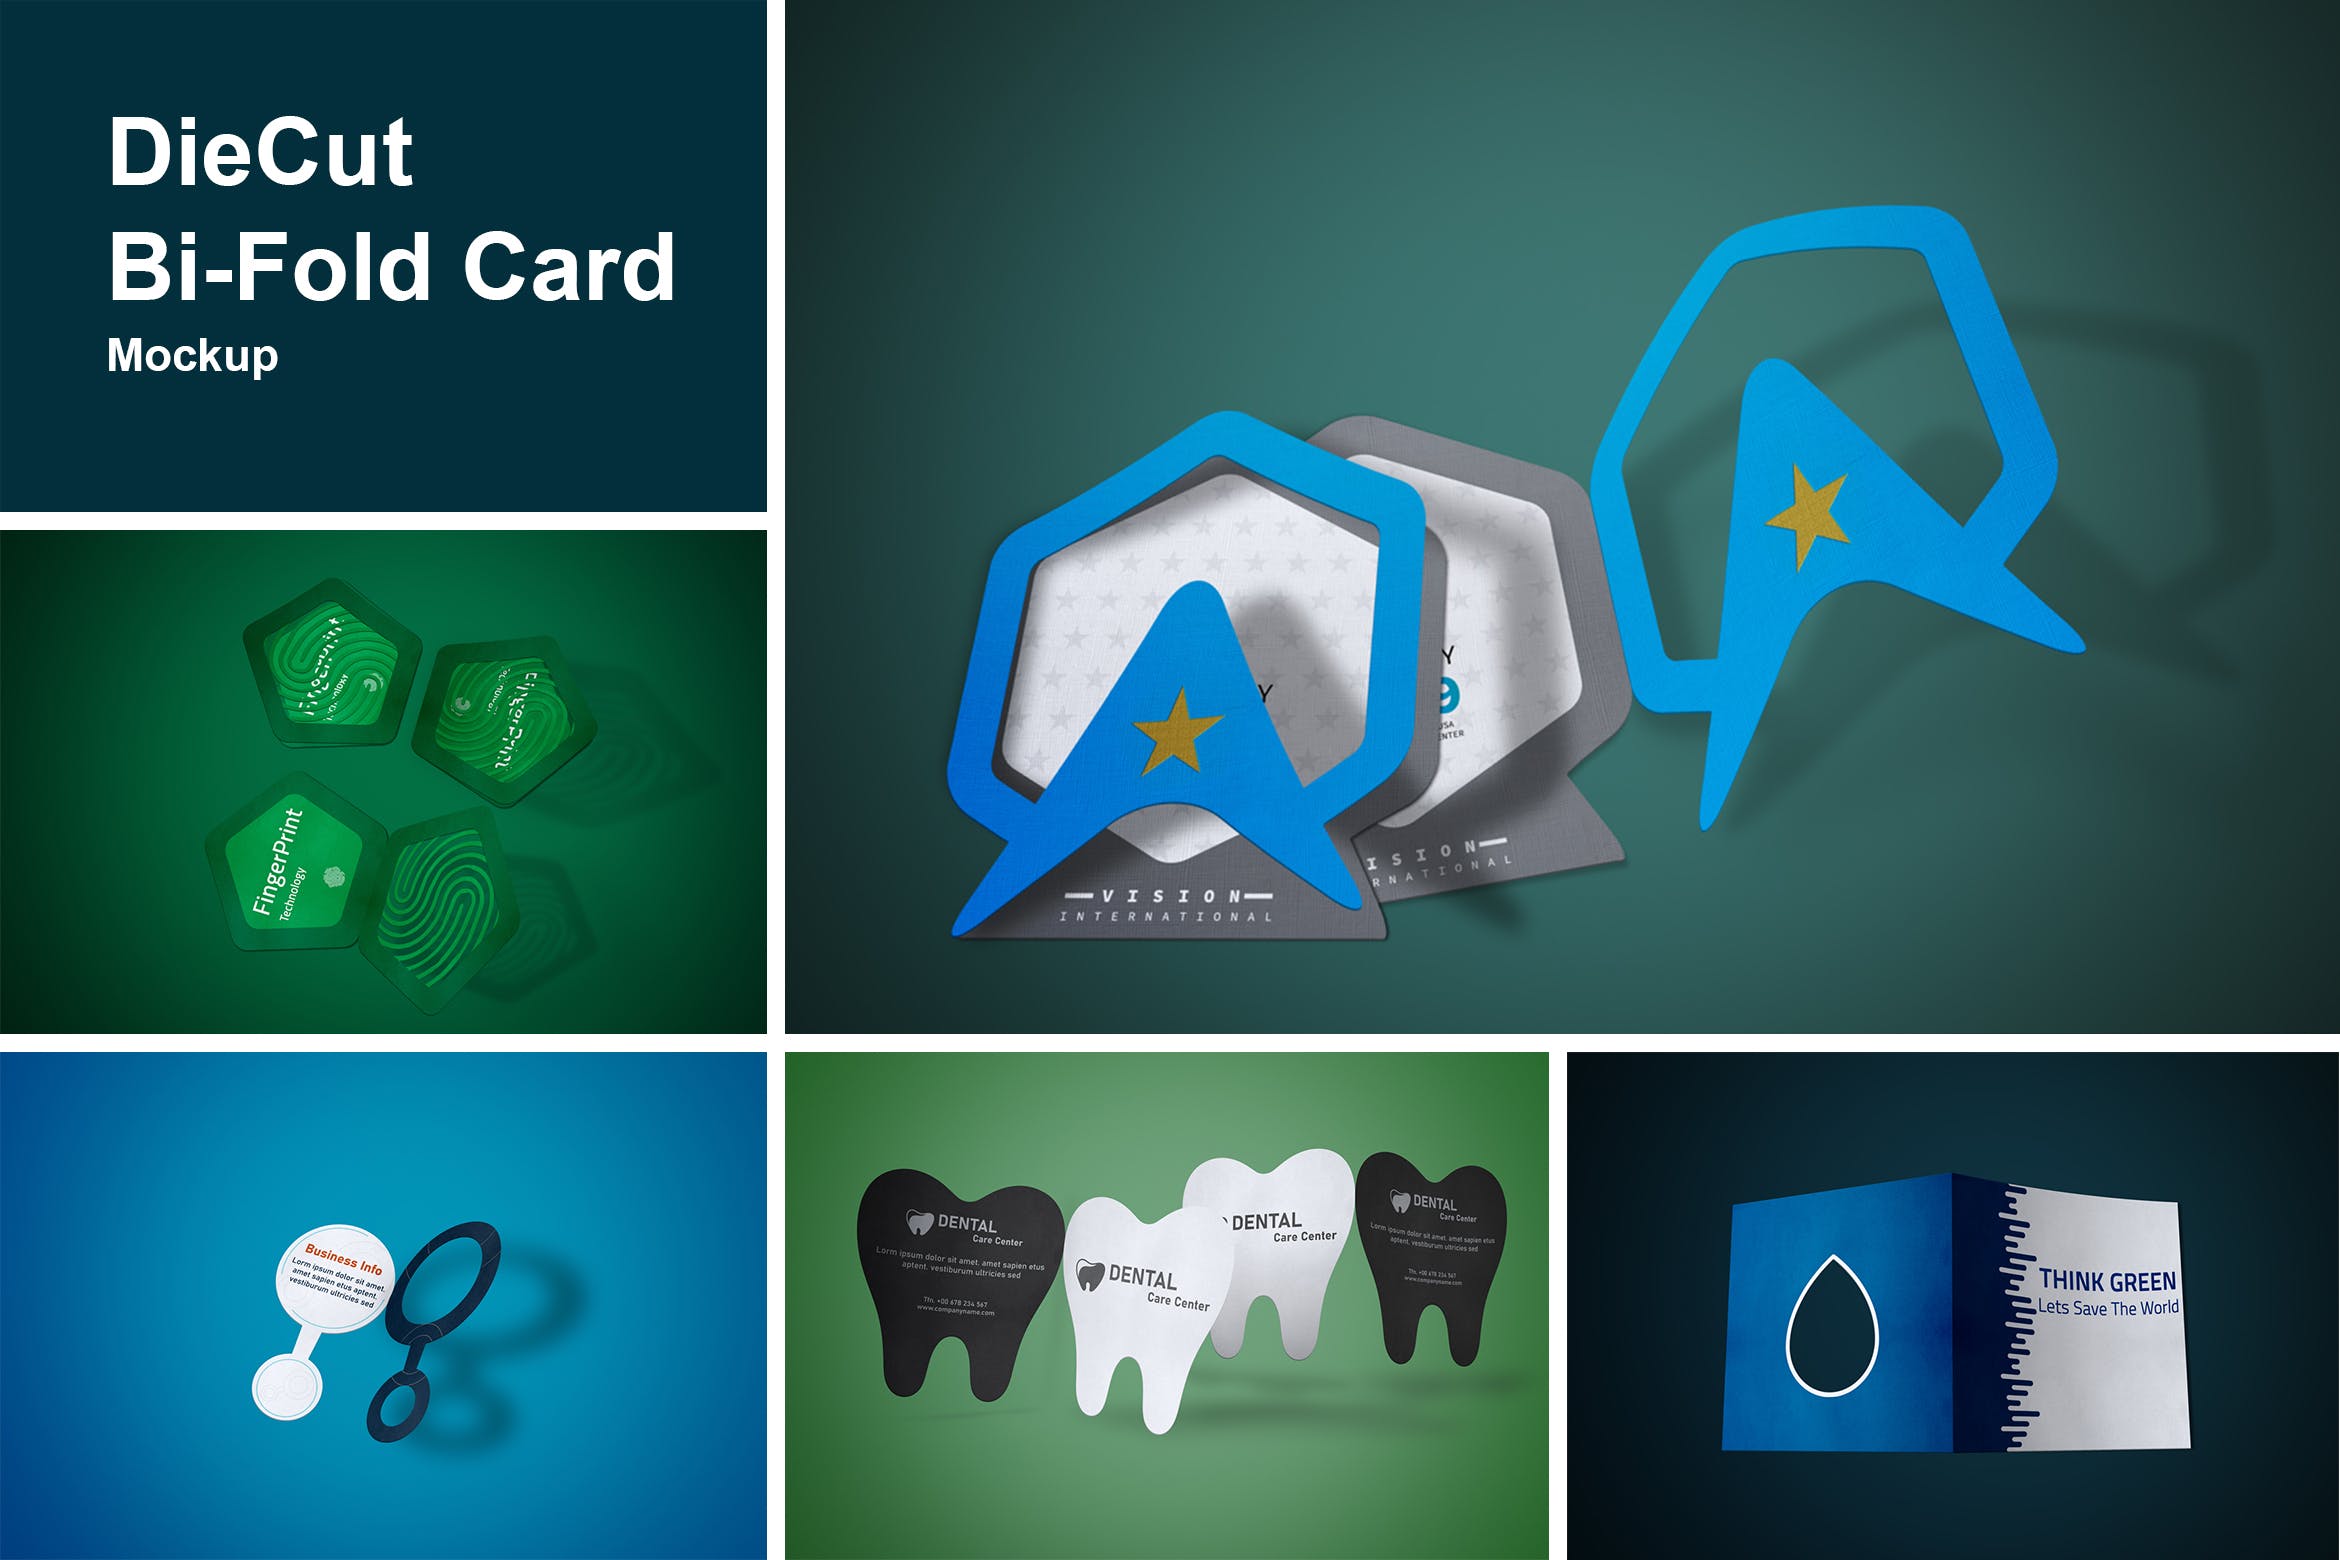 DieCut裁切工艺折叠卡片设计图蚂蚁素材精选 DieCut Bi-Fold Card Mockup插图